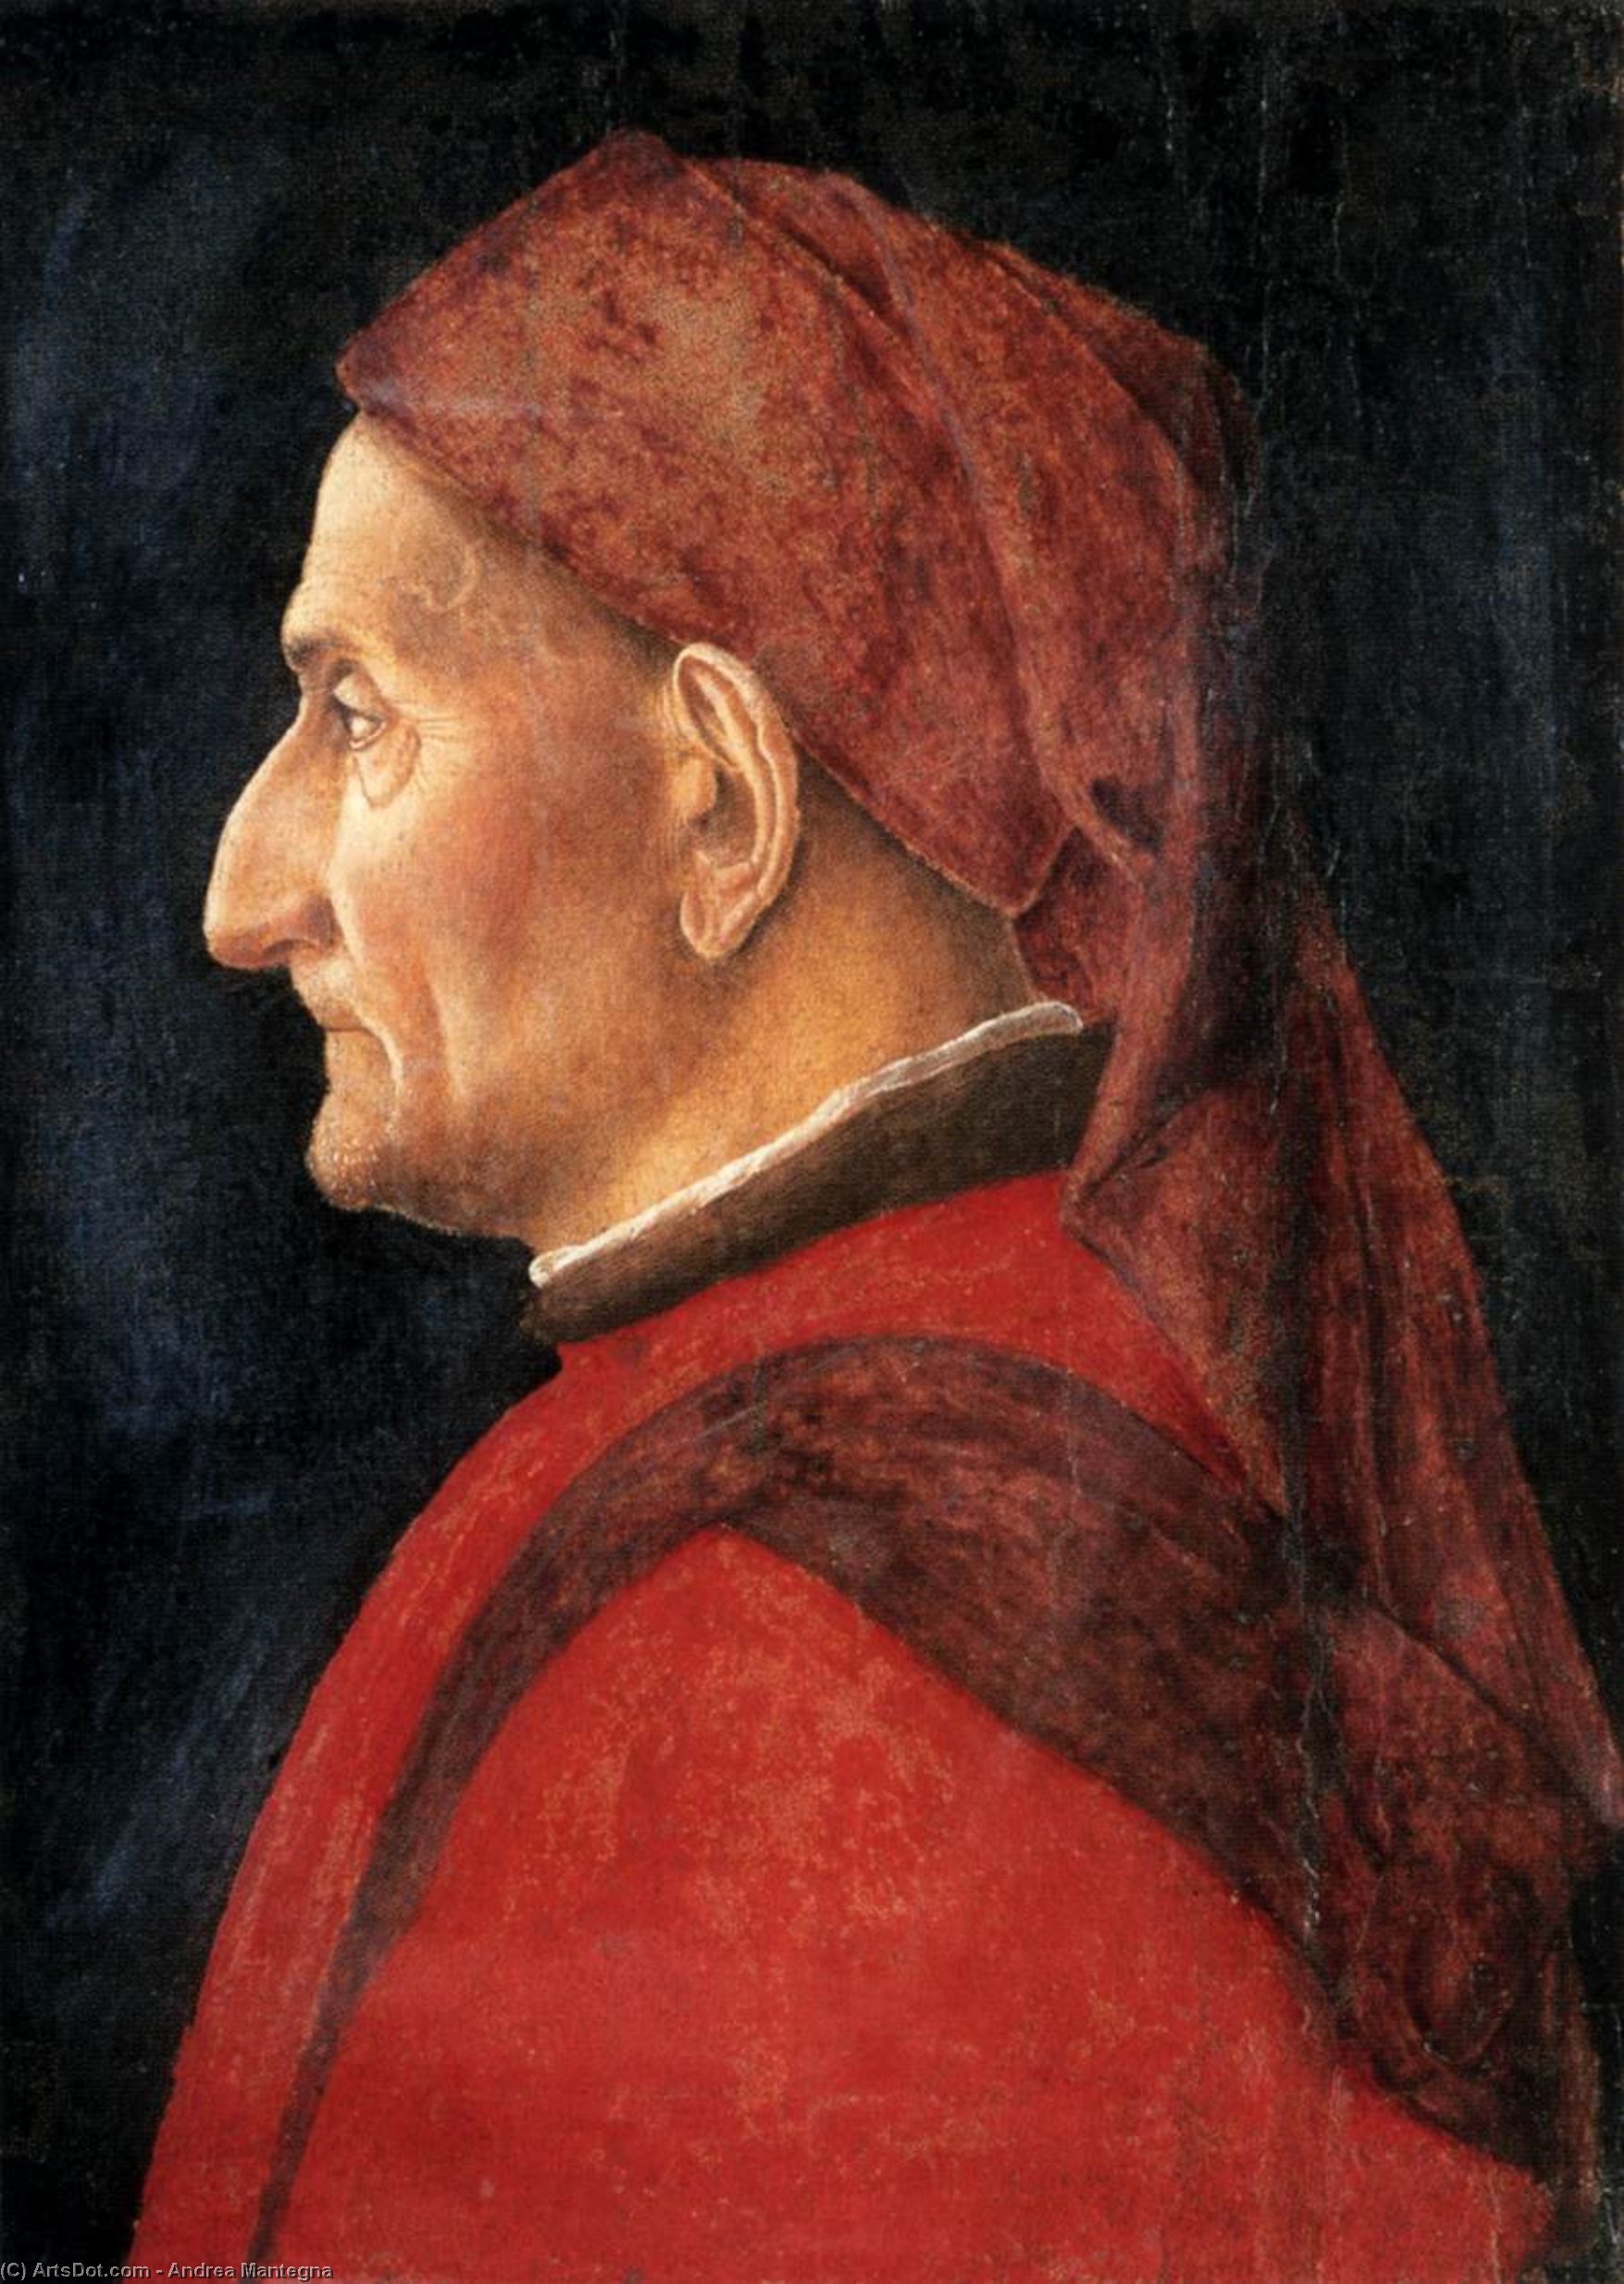 WikiOO.org - Энциклопедия изобразительного искусства - Живопись, Картины  Andrea Mantegna - Портрет мужчины